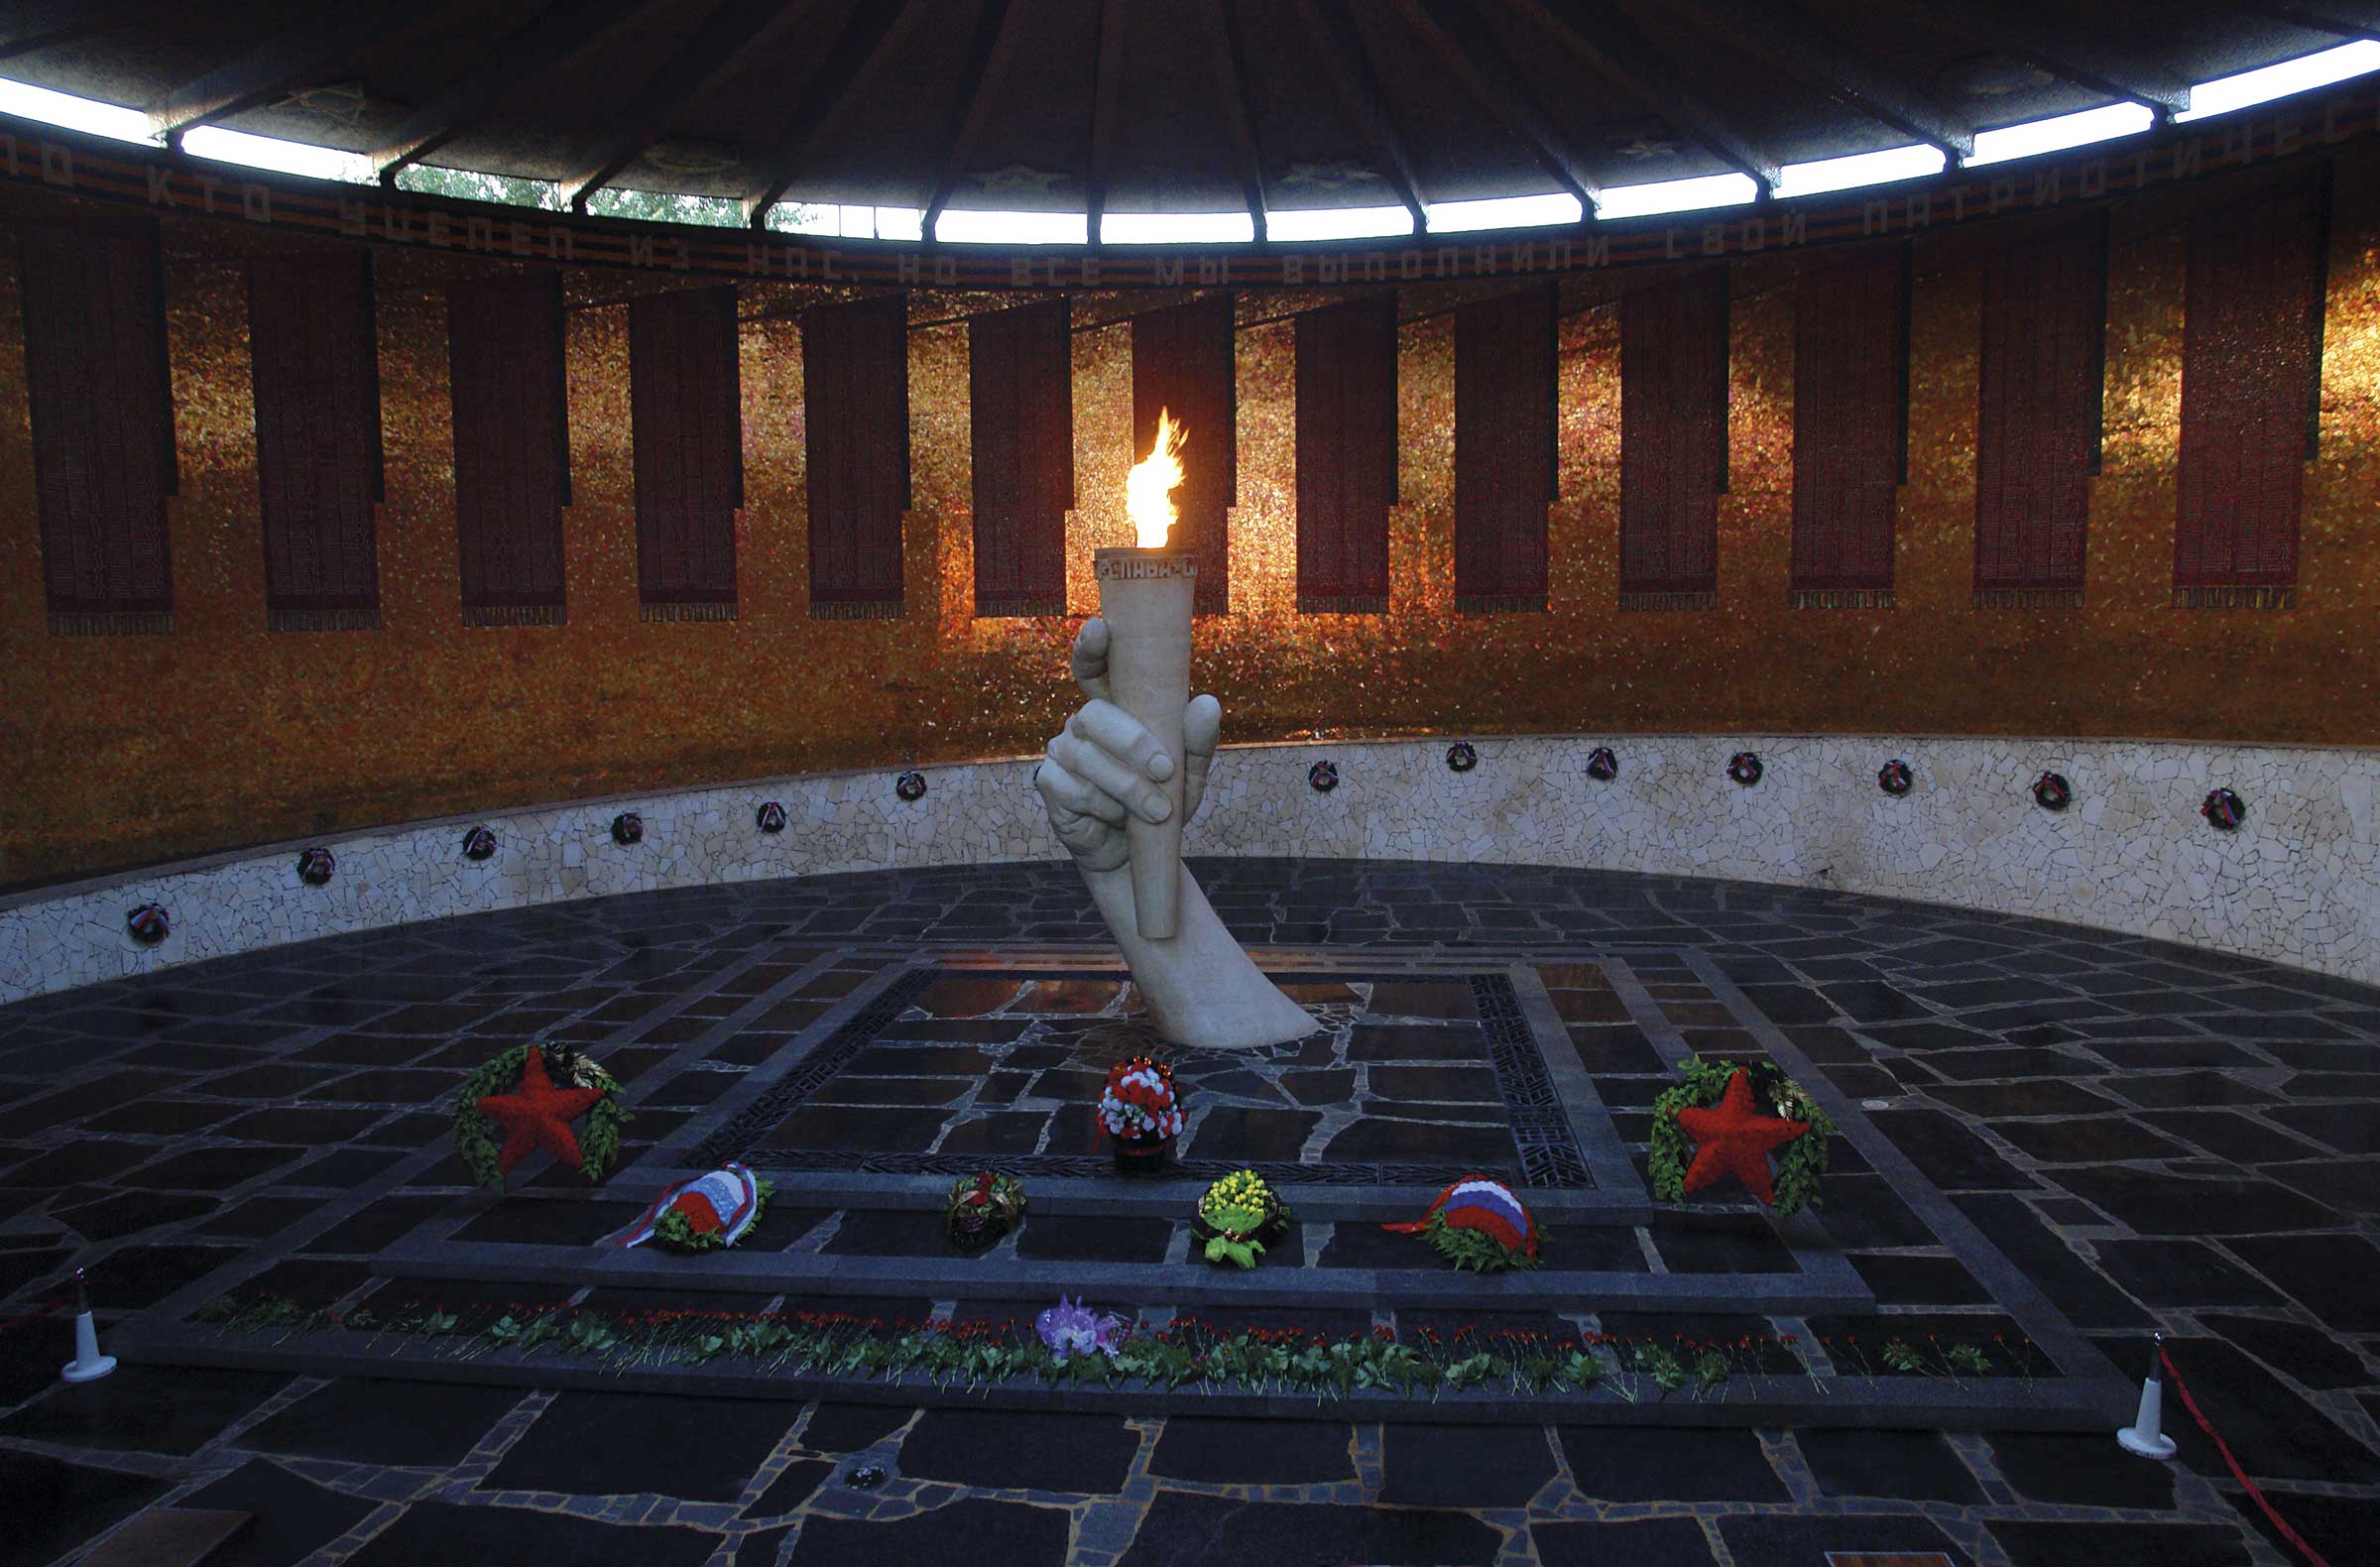 Second World War Memorial in Volgograd